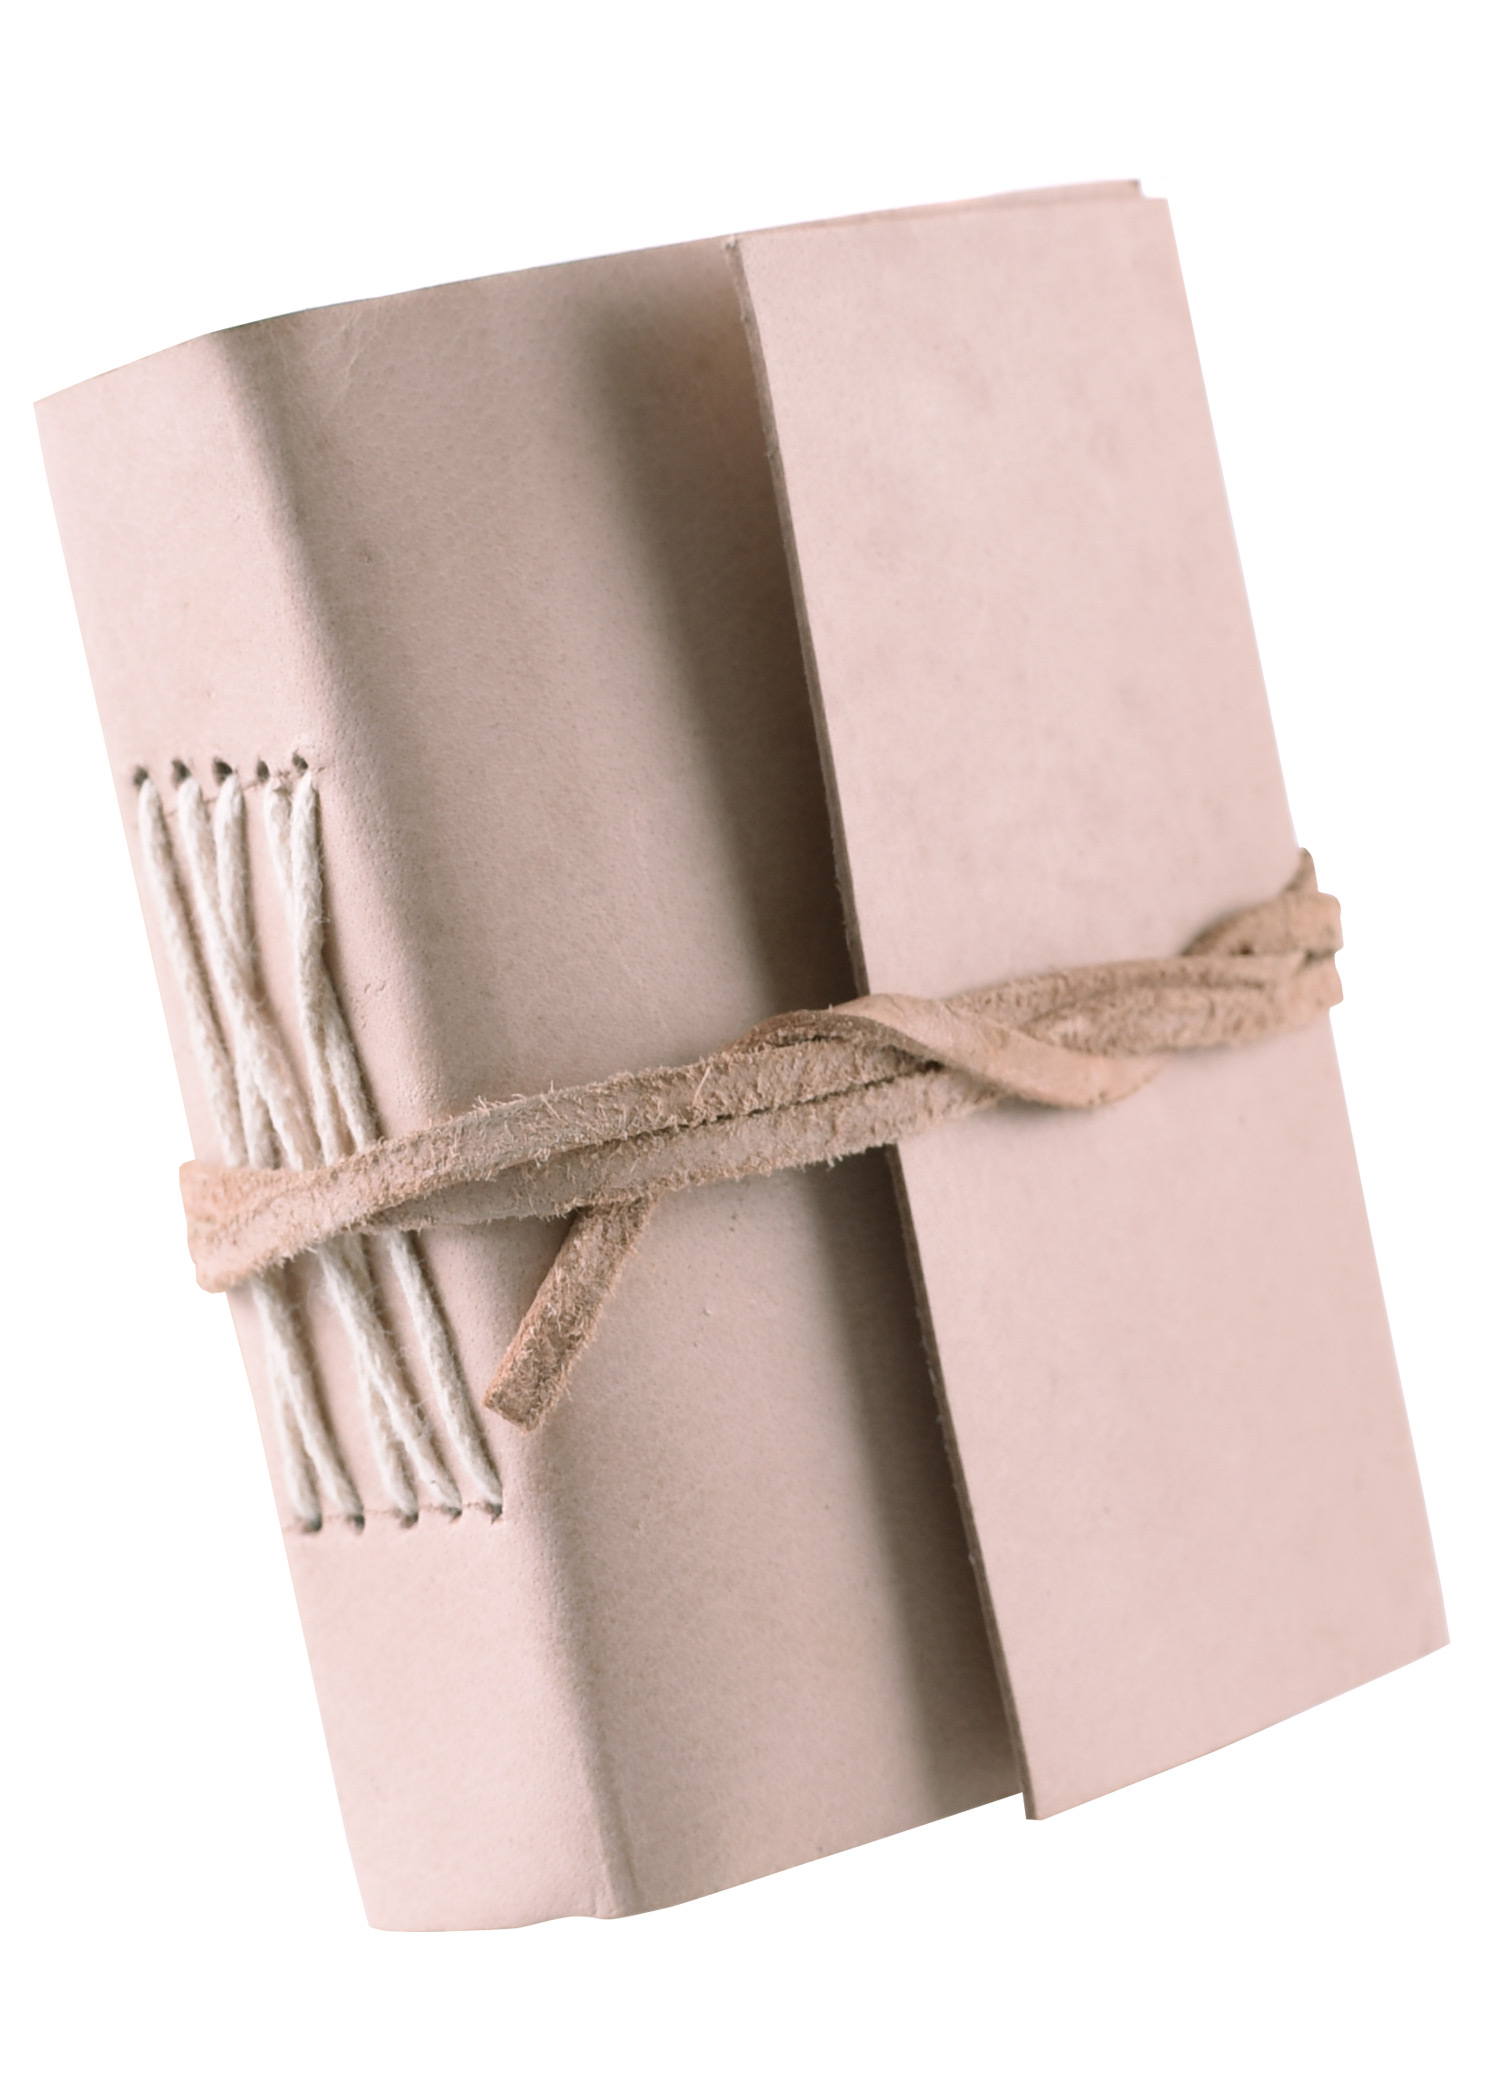 Kleines Notizbuch mit Ledereinband,  naturfarben, ca. 7 x 9 cm